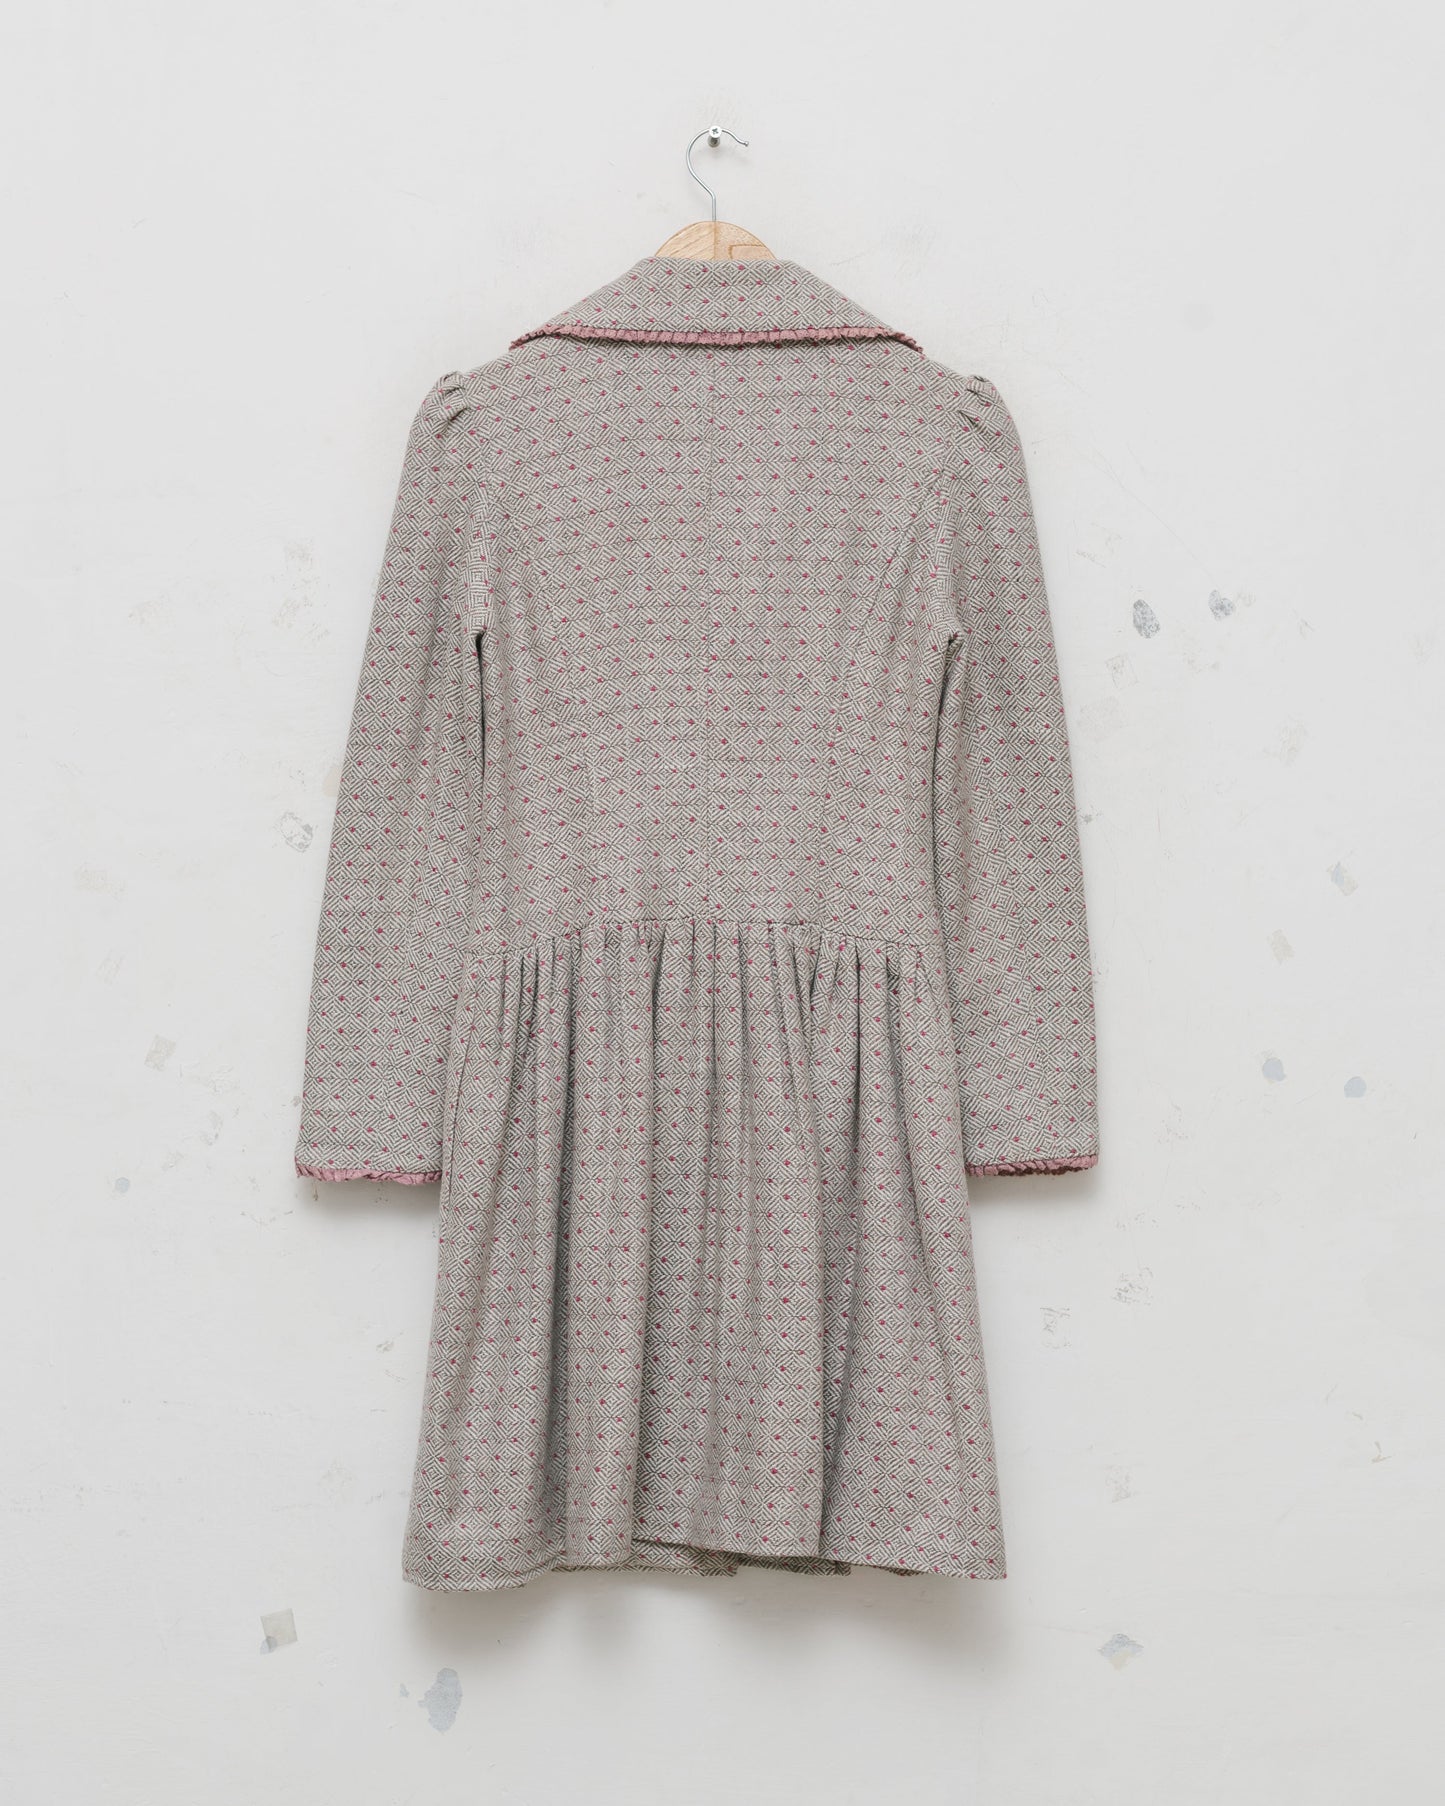 Chloé patterned dress coat